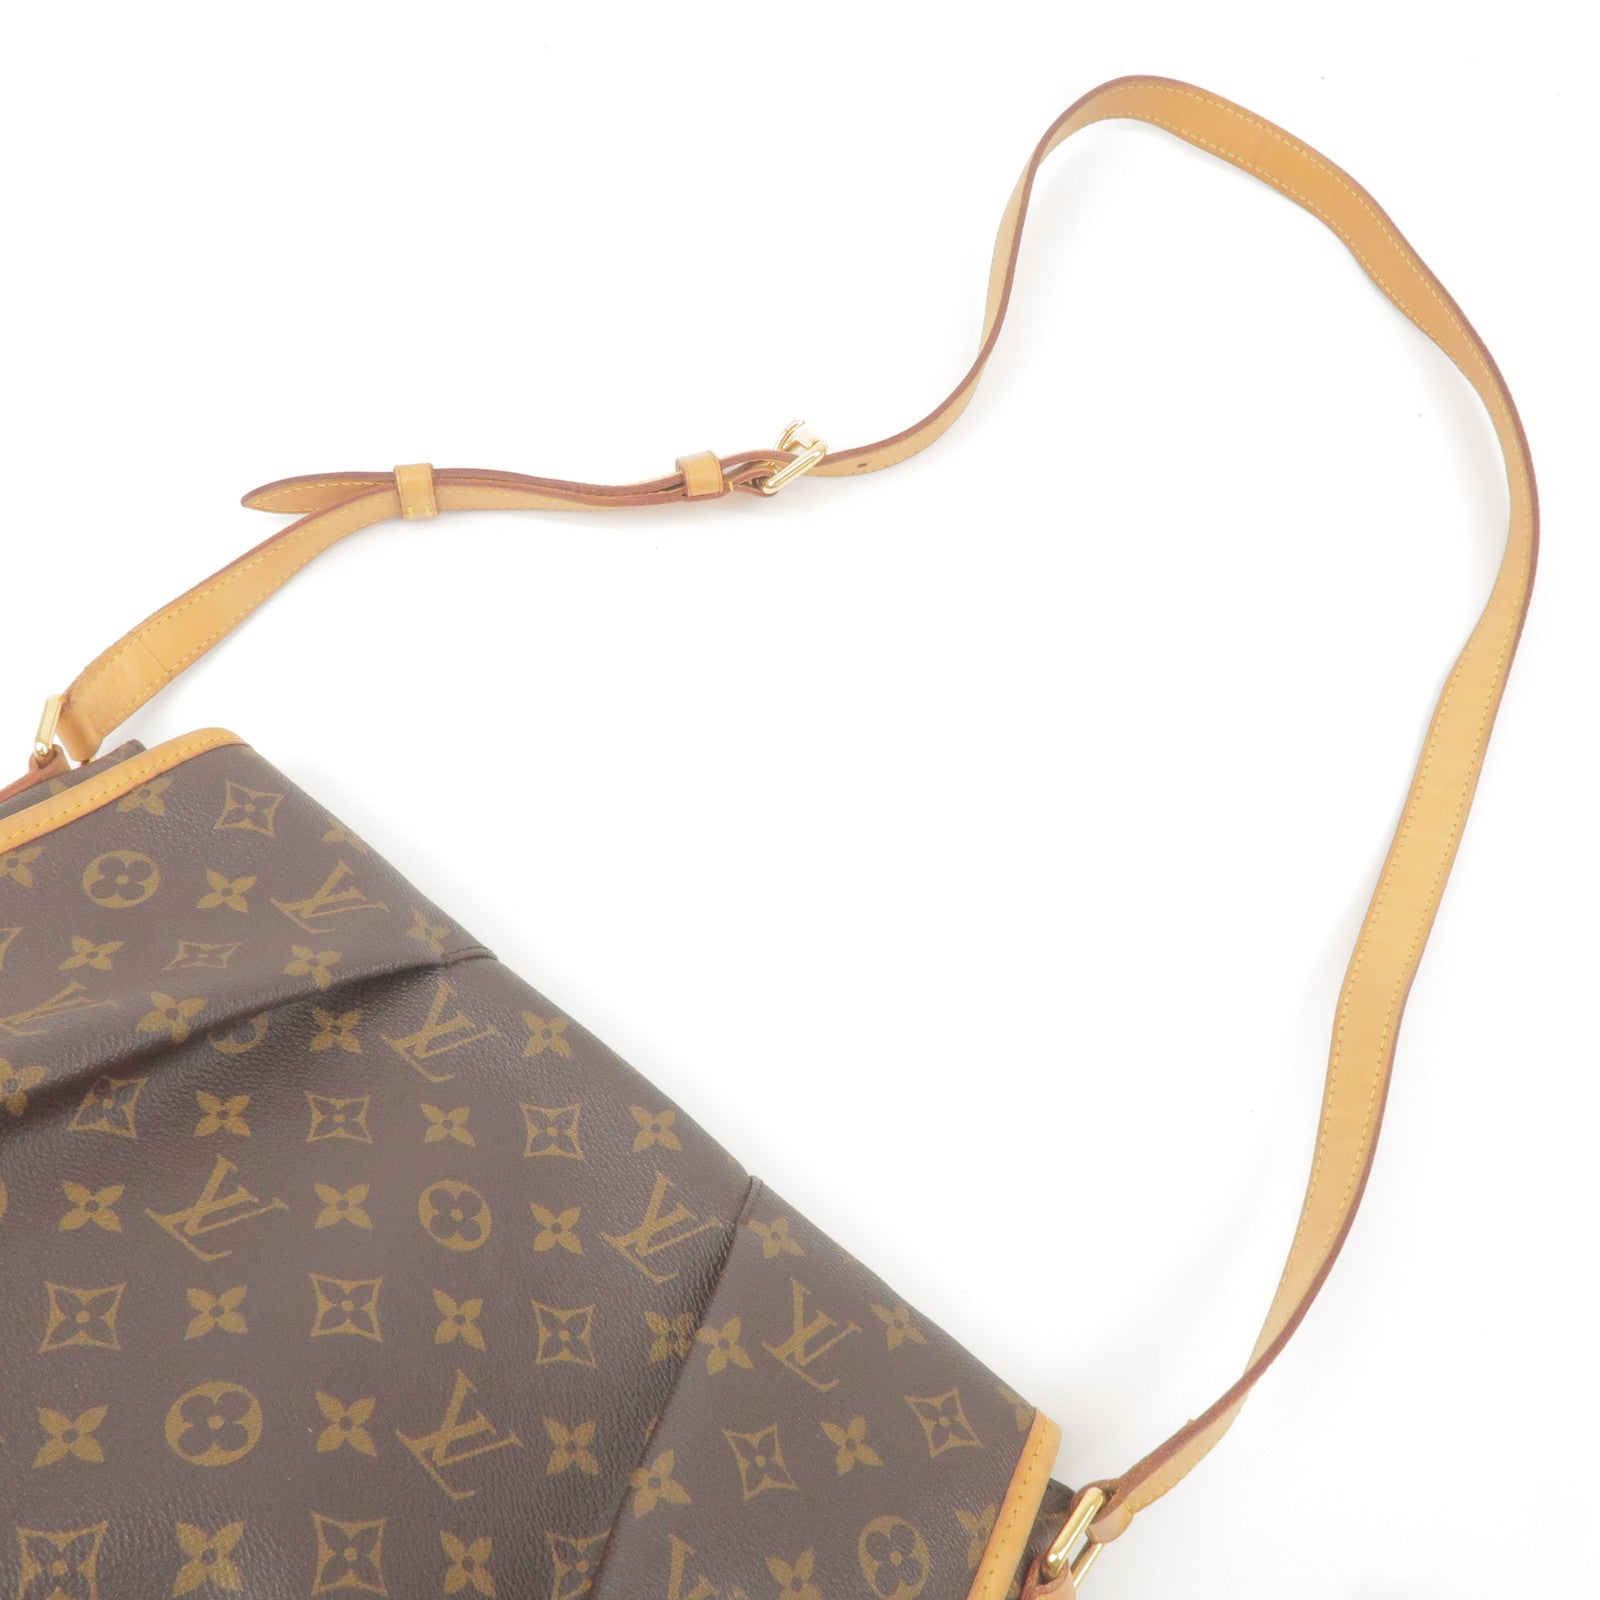 Louis Vuitton Monogram Canvas Menilmontant MM Messenger Bag